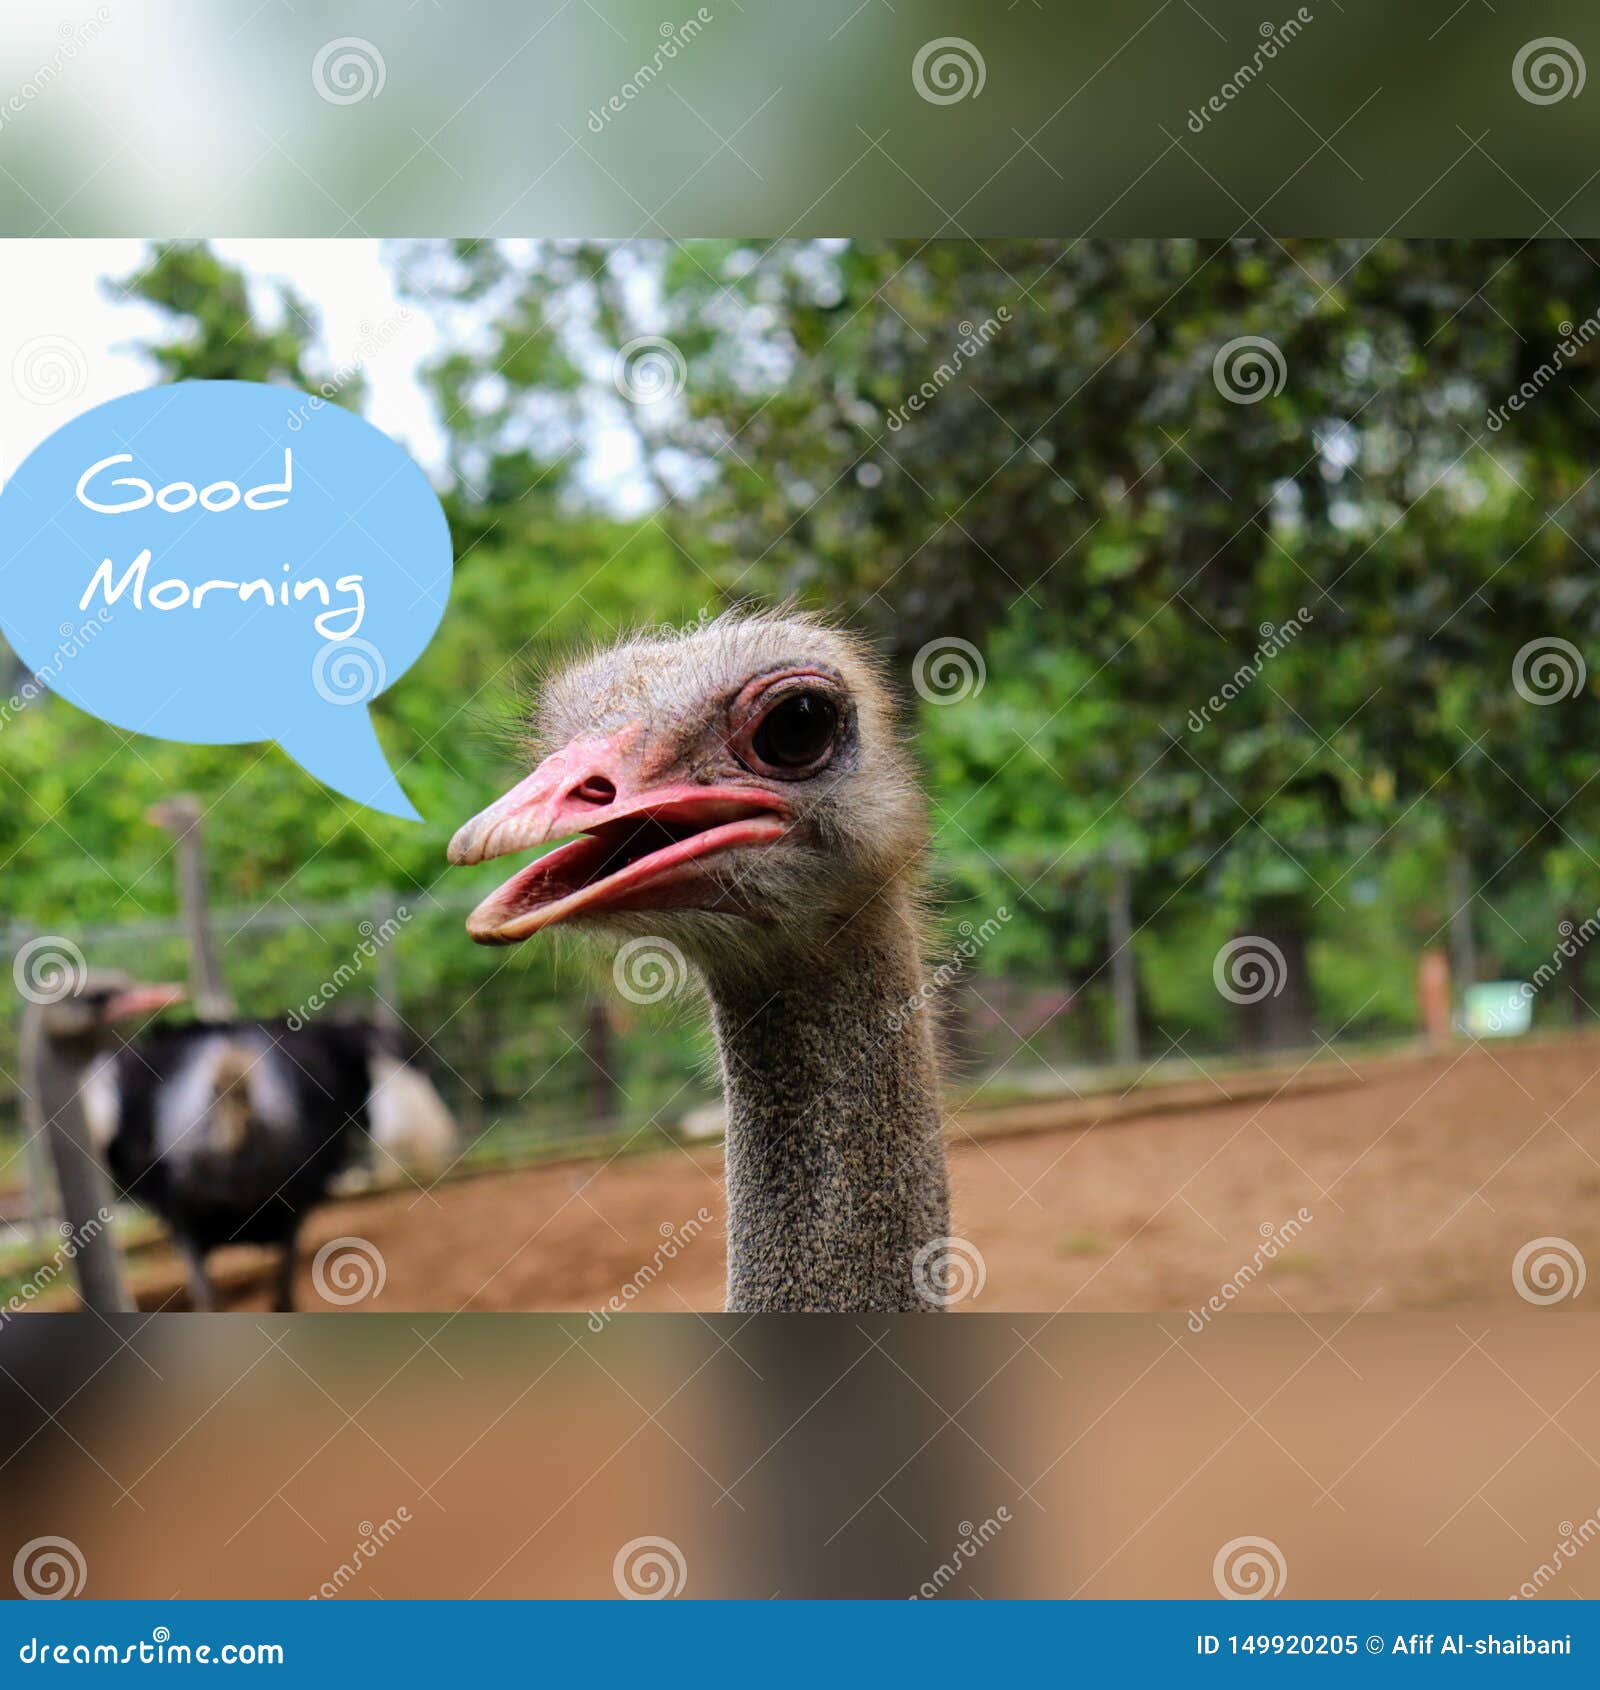 Struisvogel Van Het Goedemorgen De Grappige Beeld Stock Afbeelding - Image  Of Grappig, Beeld: 149920205